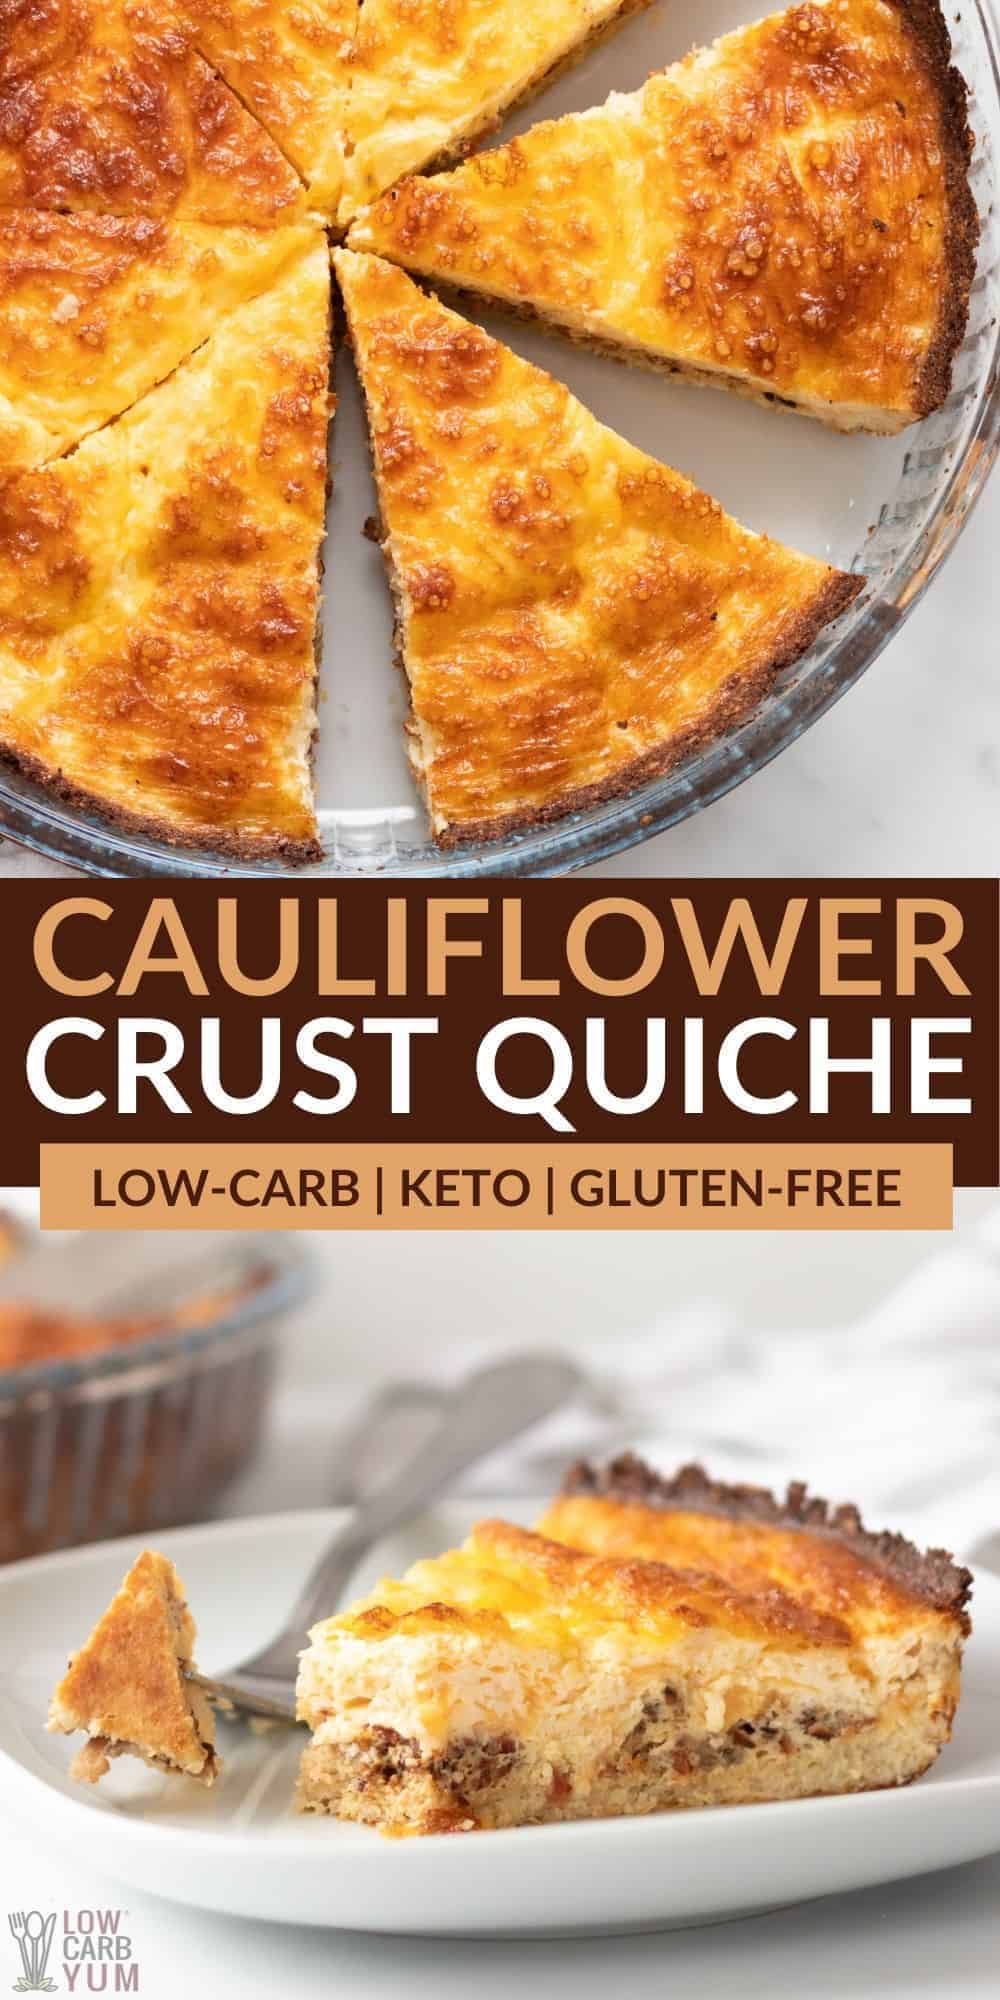 cauliflower crust quiche pinterest image.